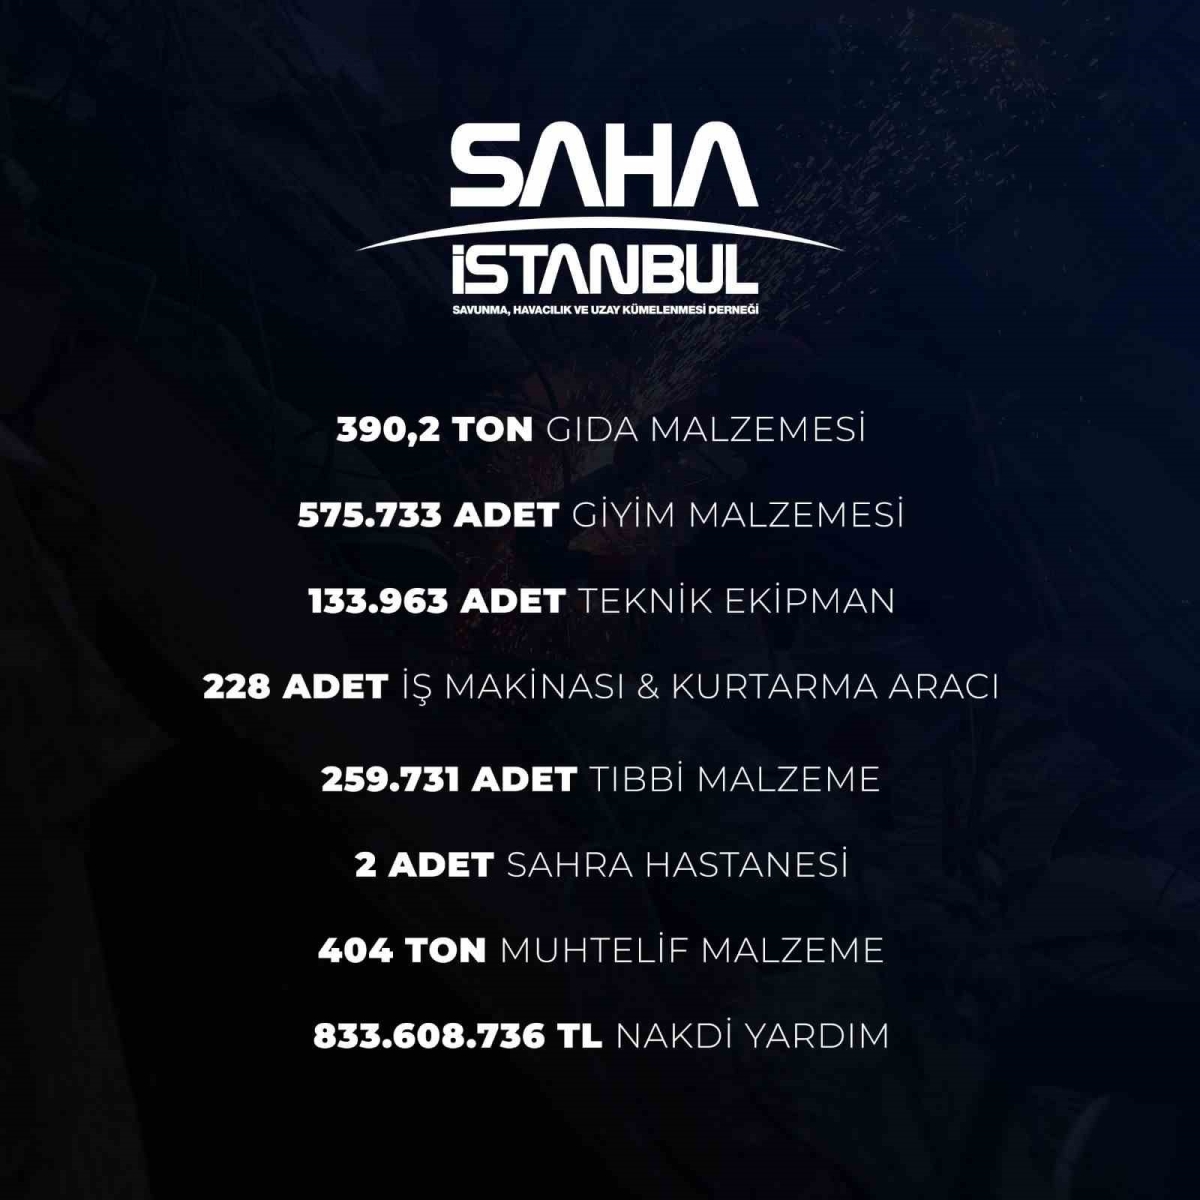 SAHA İstanbul’dan deprem bölgesine 833 milyon 608 bin 736 TL’lik destek
